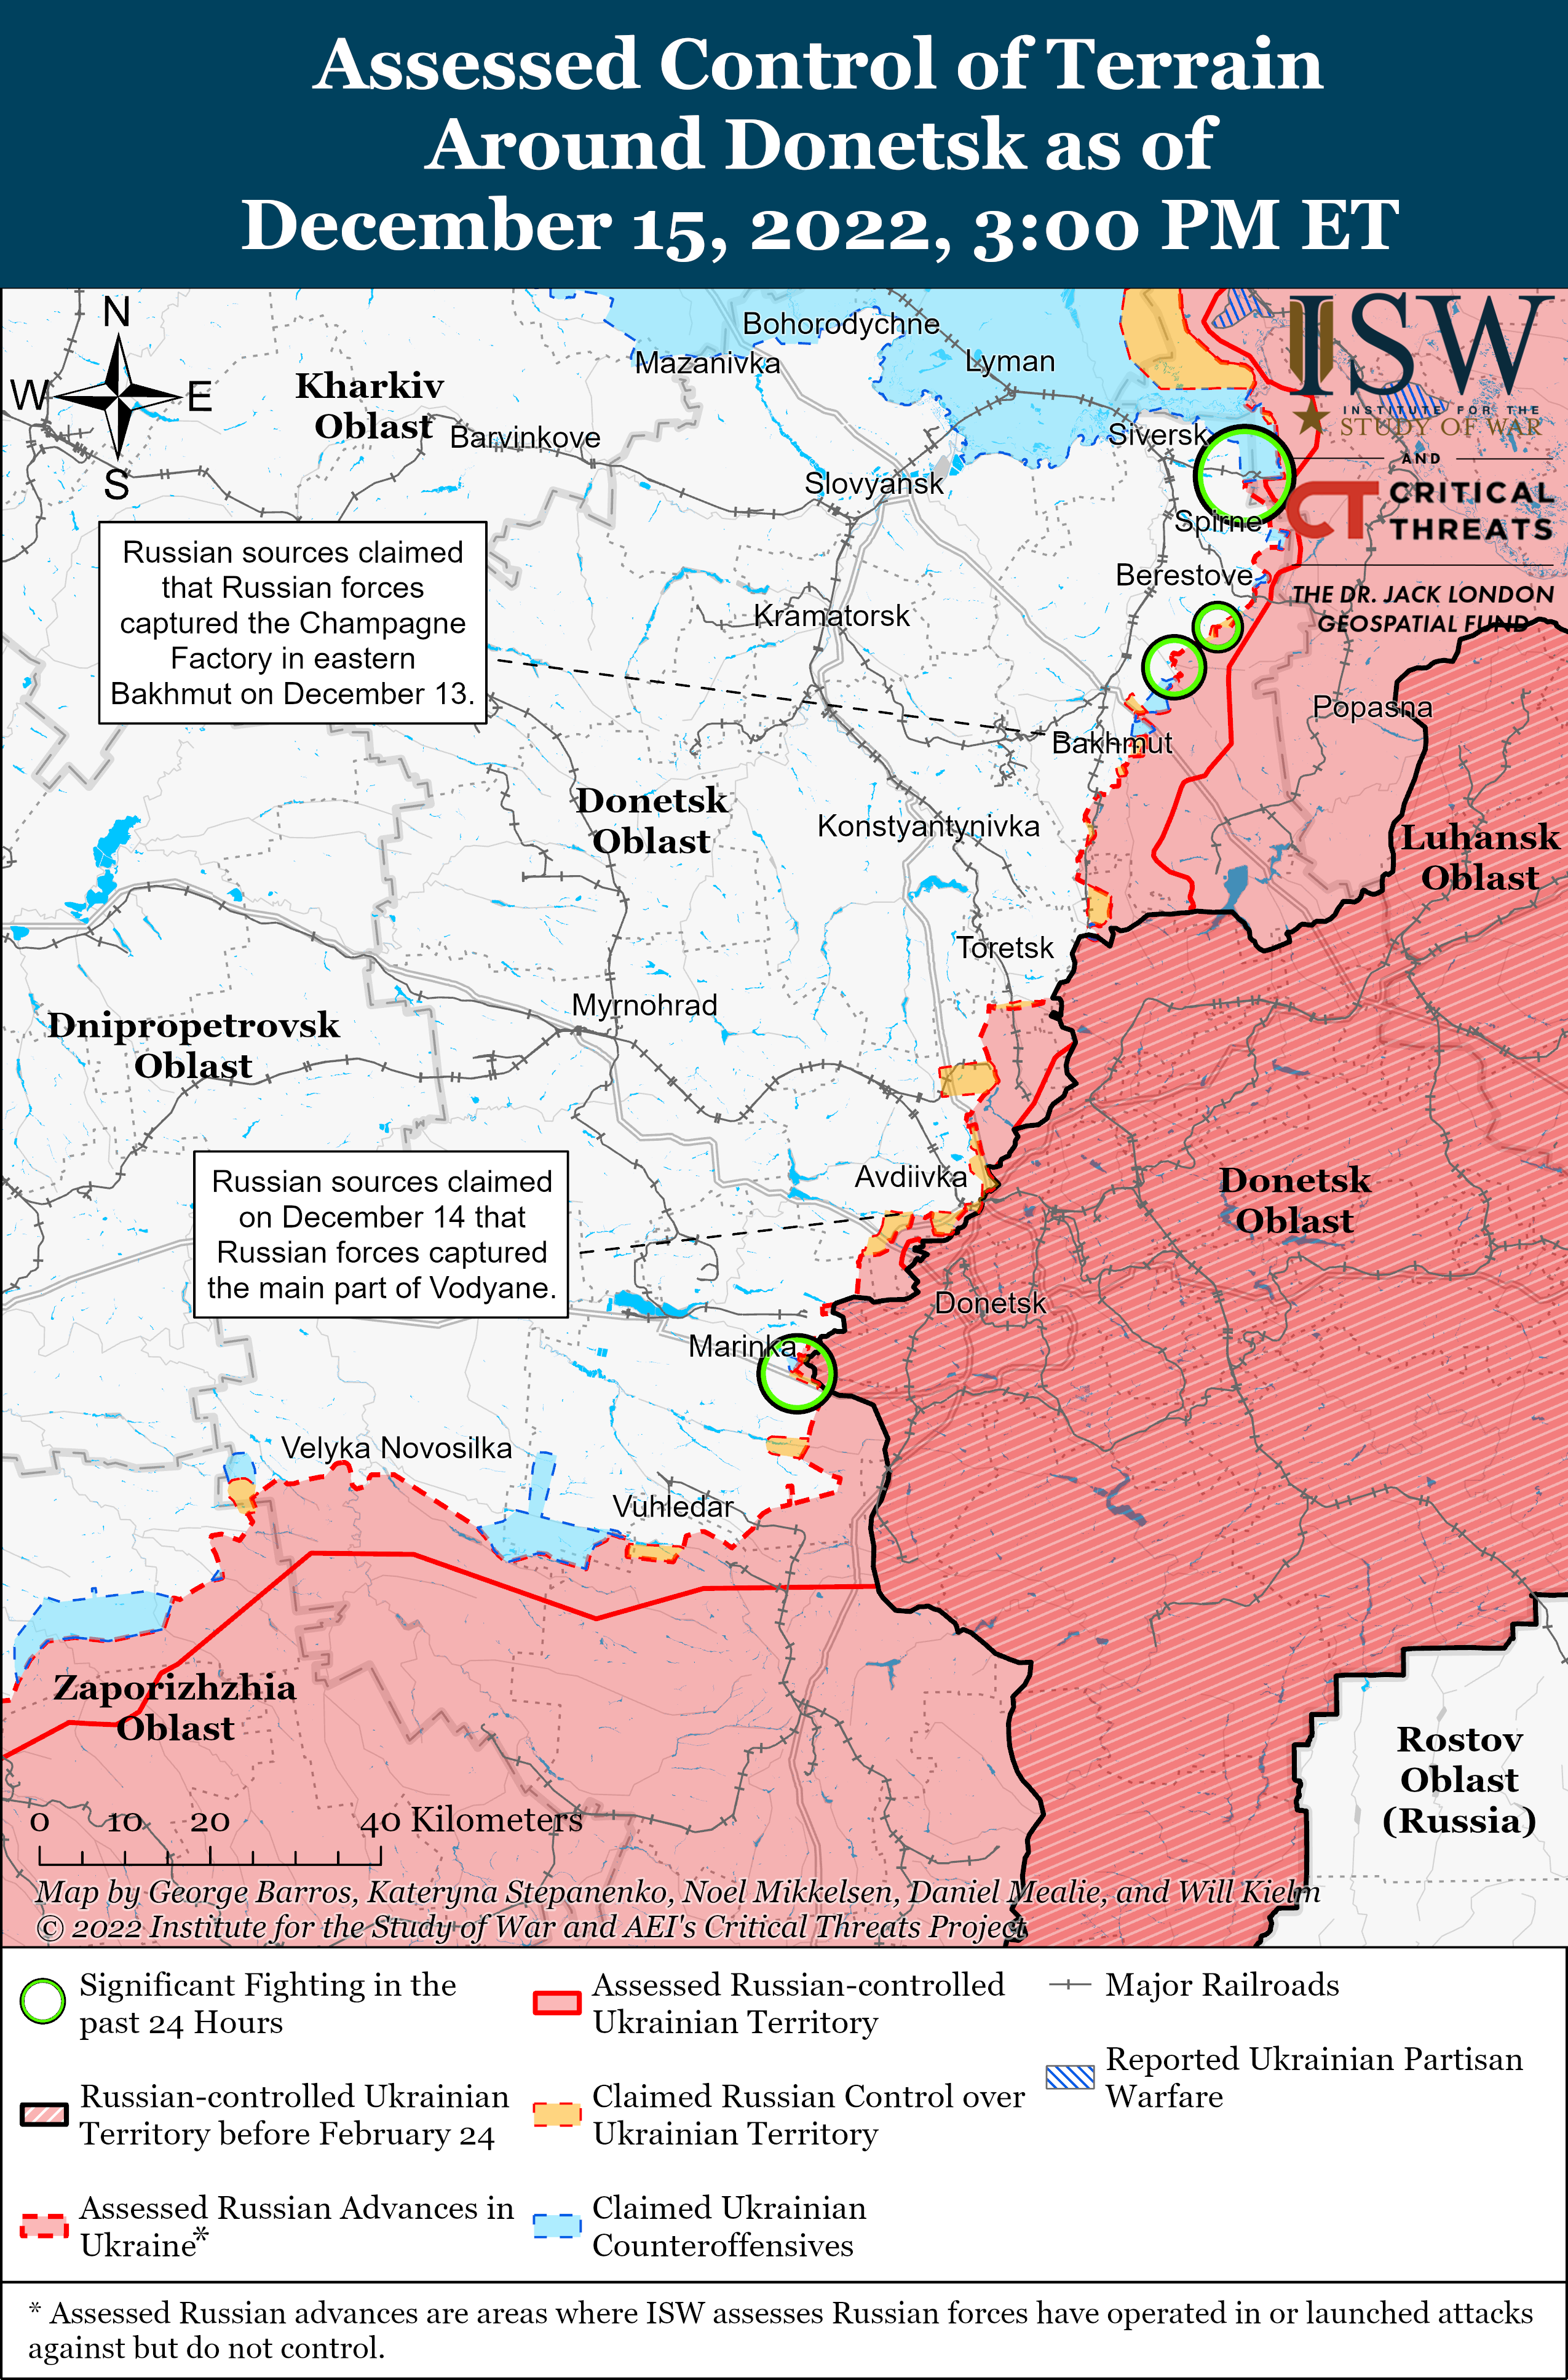 Продвижение к Сватово и попытка прорыва обороны ВСУ под Белогоровкой: карты боев